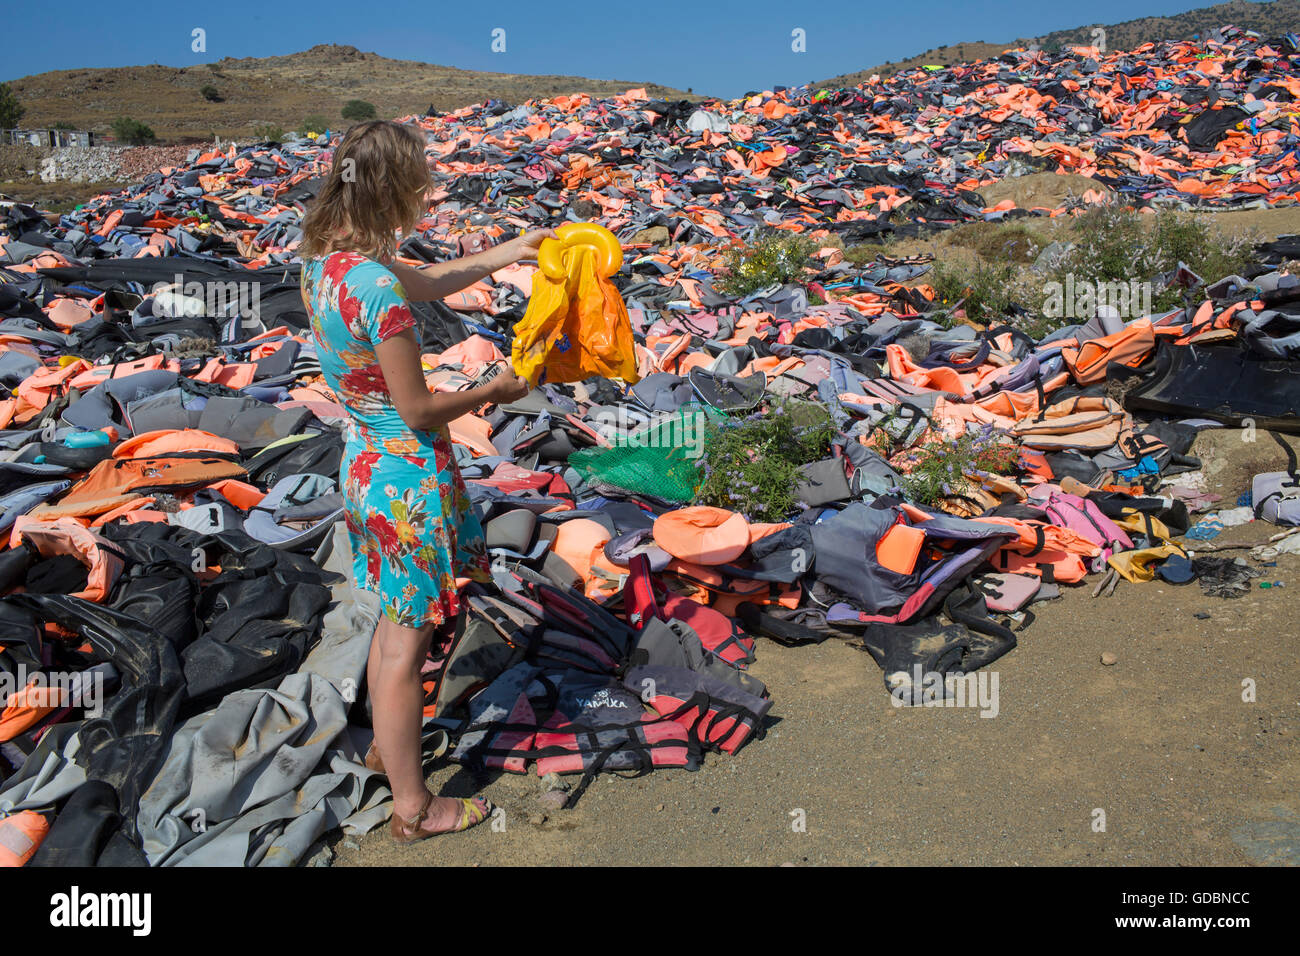 Chalecos salvavidas utilizados por los refugiados a cruzar desde Turquía a  Grecia. Estos son recogidos y arrojados en la fosa de desechos en Lesbos  Fotografía de stock - Alamy